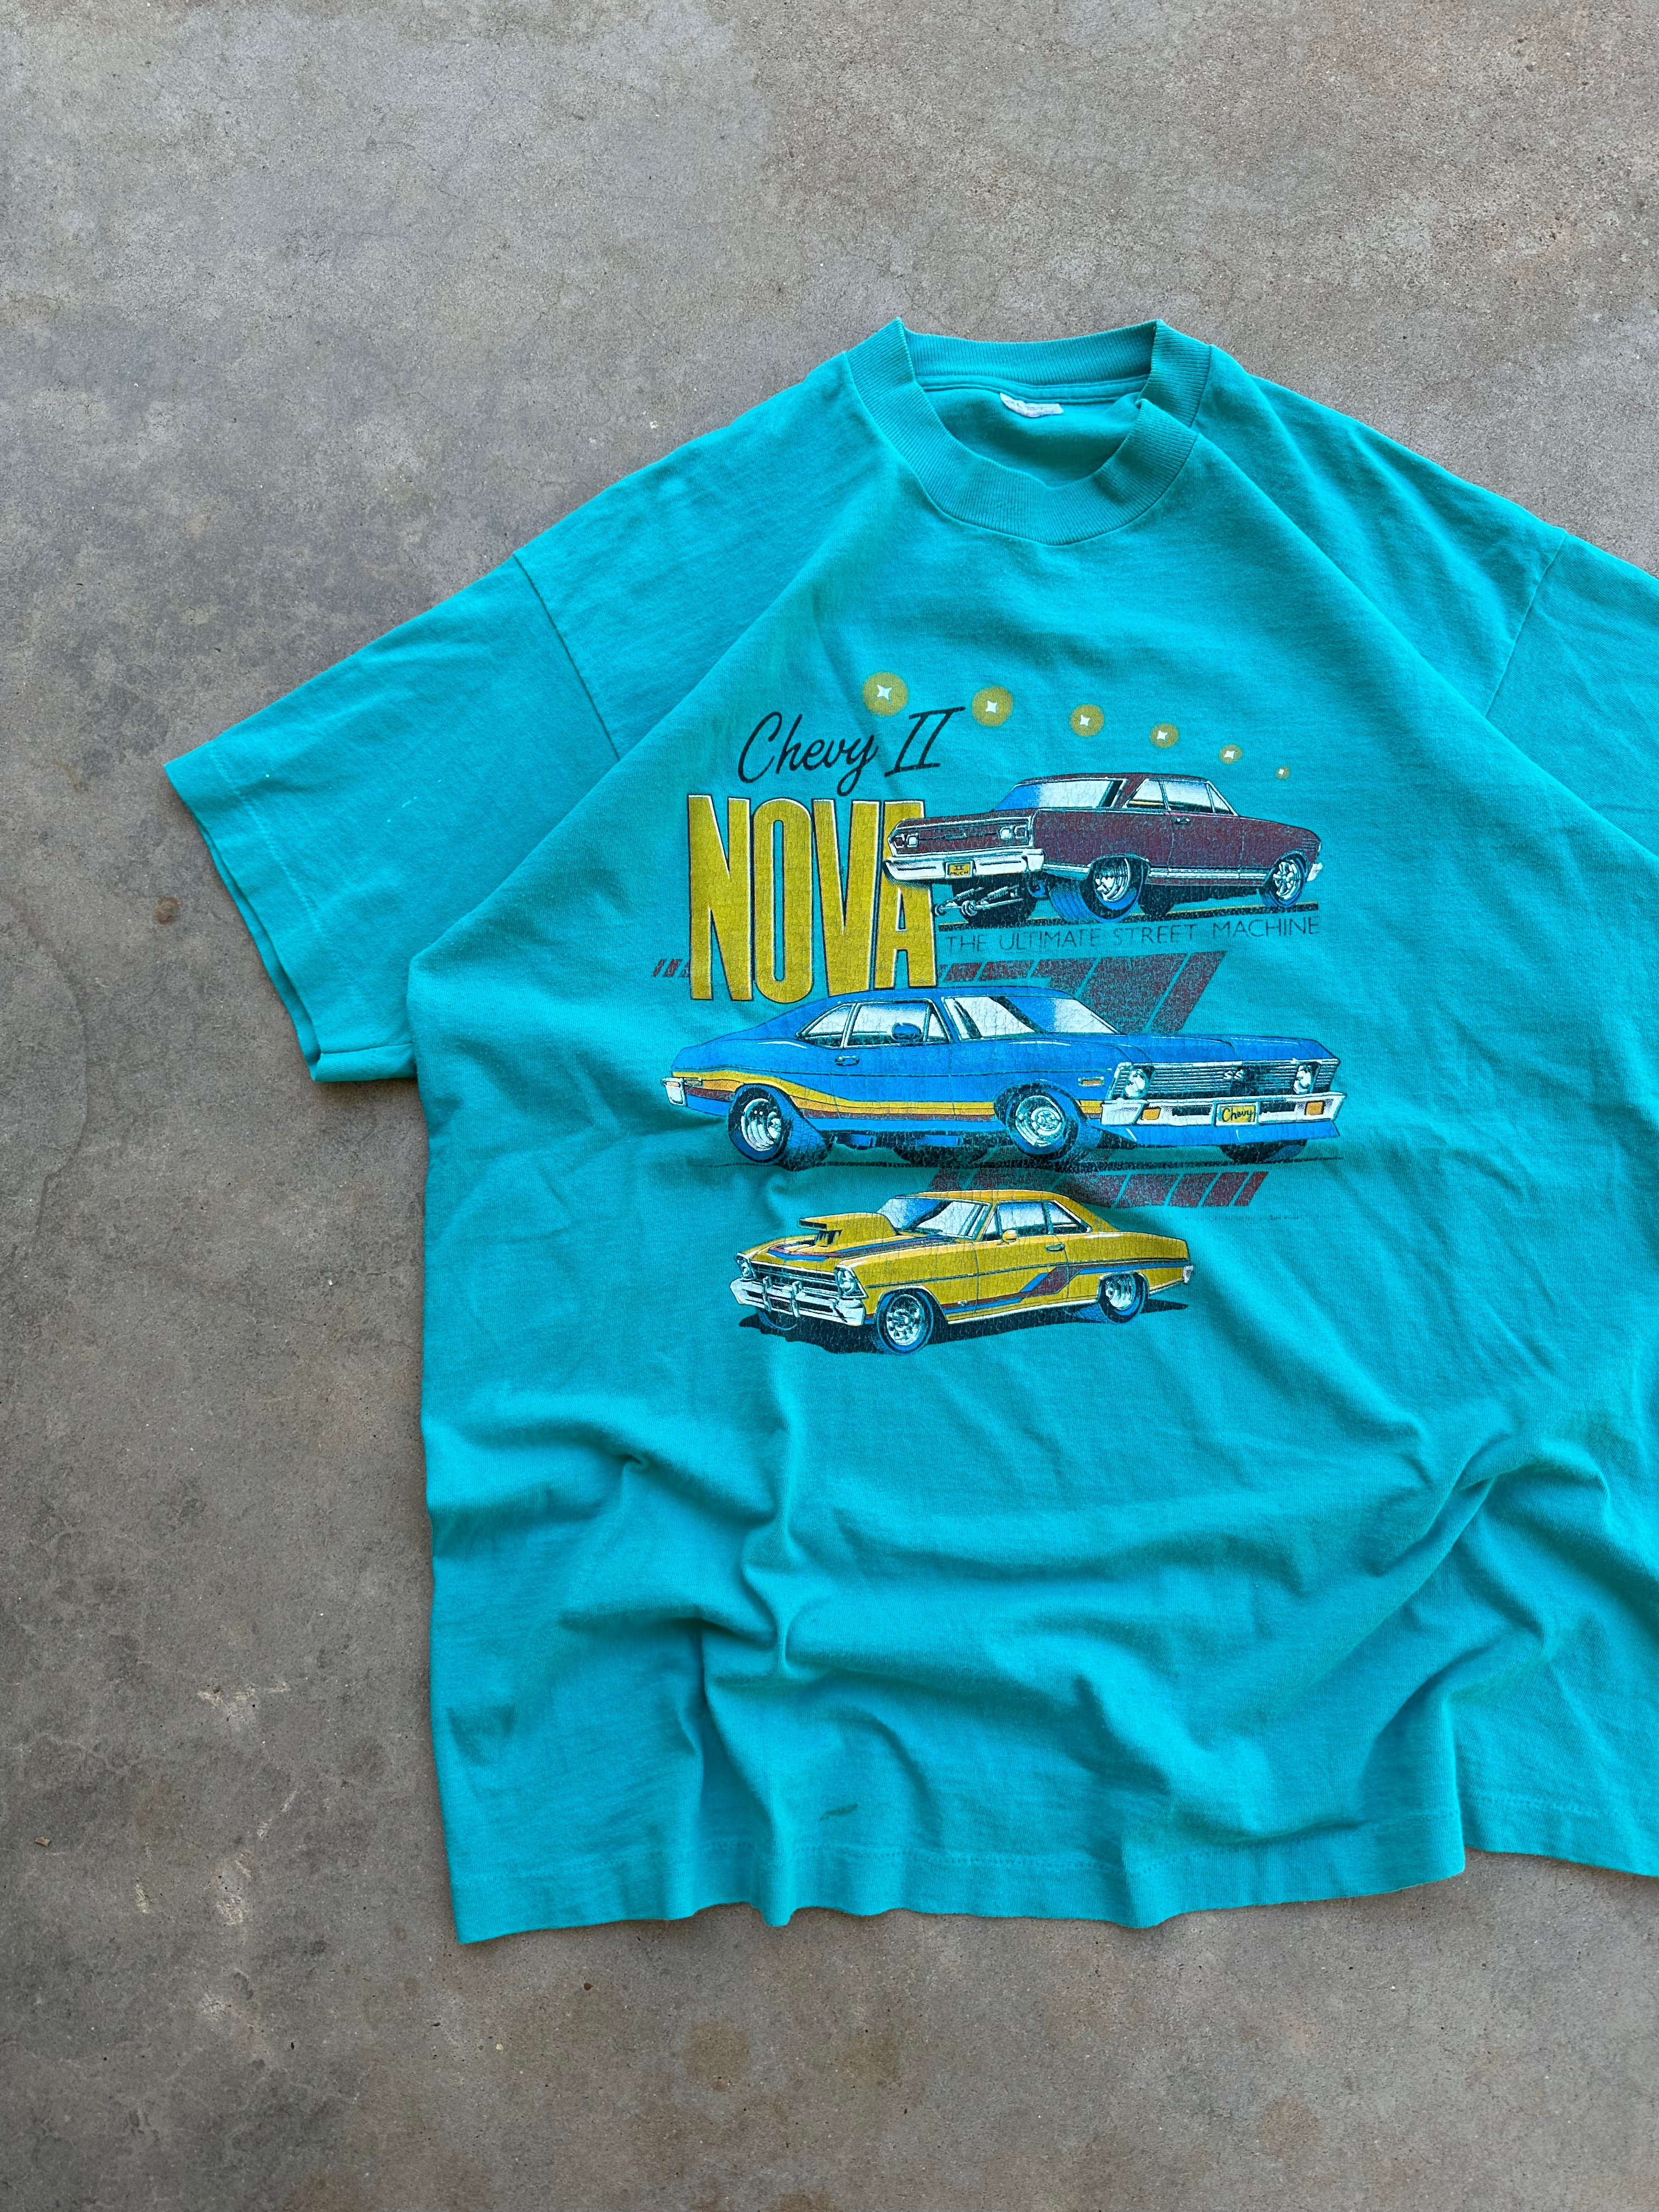 1990s Chevy II Nova T-Shirt (XL)